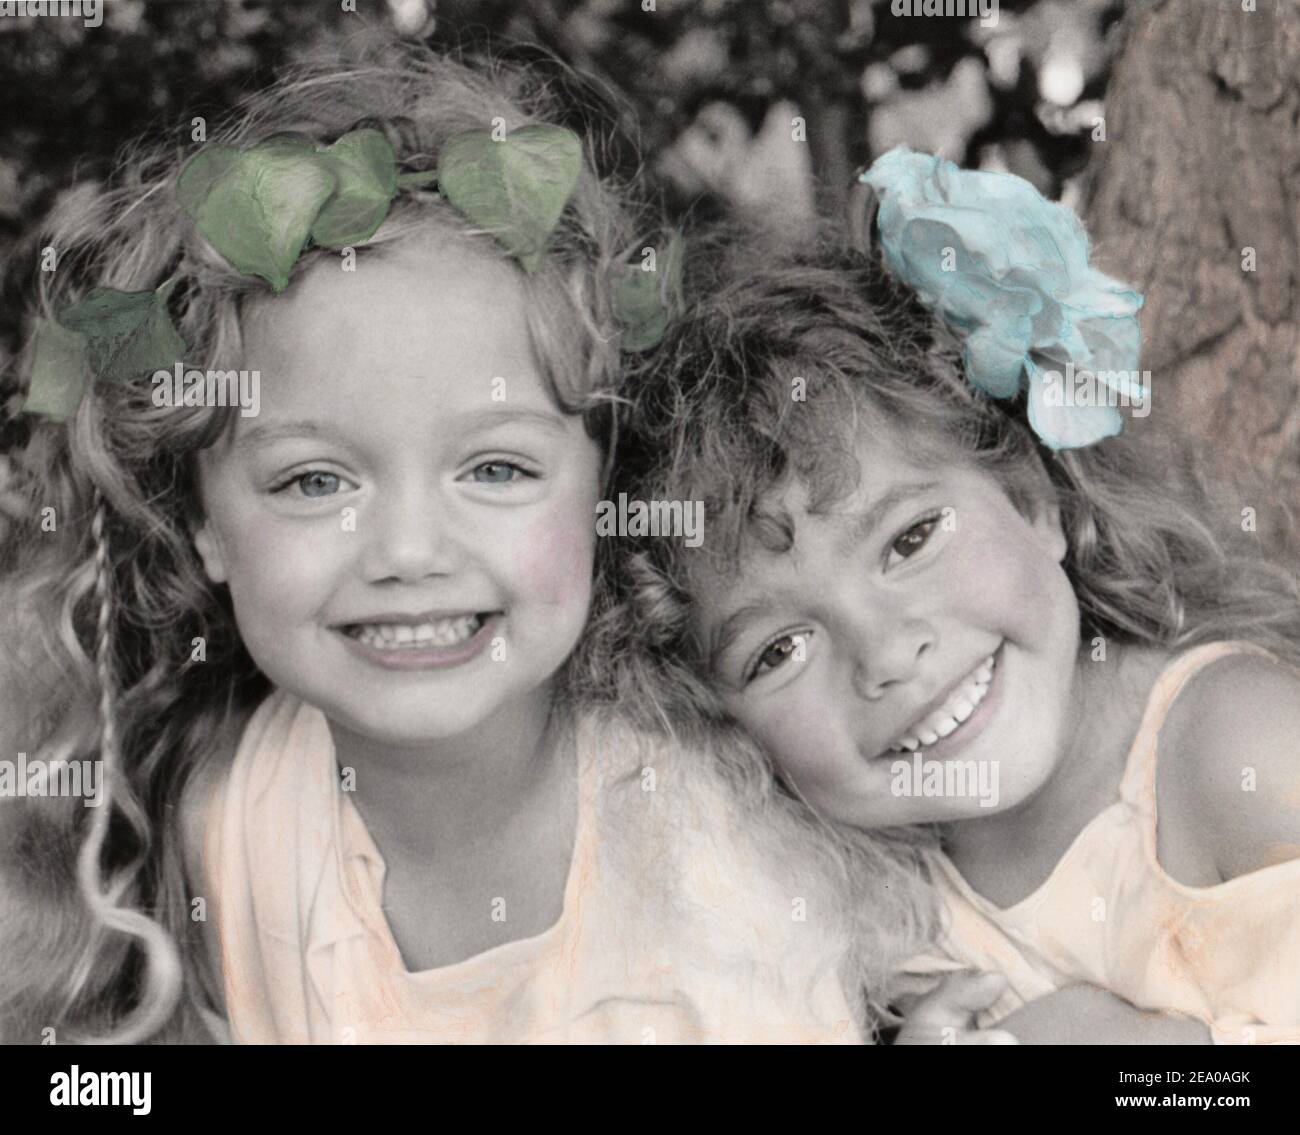 imprimé monochrome teinté granuleux de deux petites filles numérisé Dans le style de la photographe pionnière Julia Margaret Cameron Banque D'Images